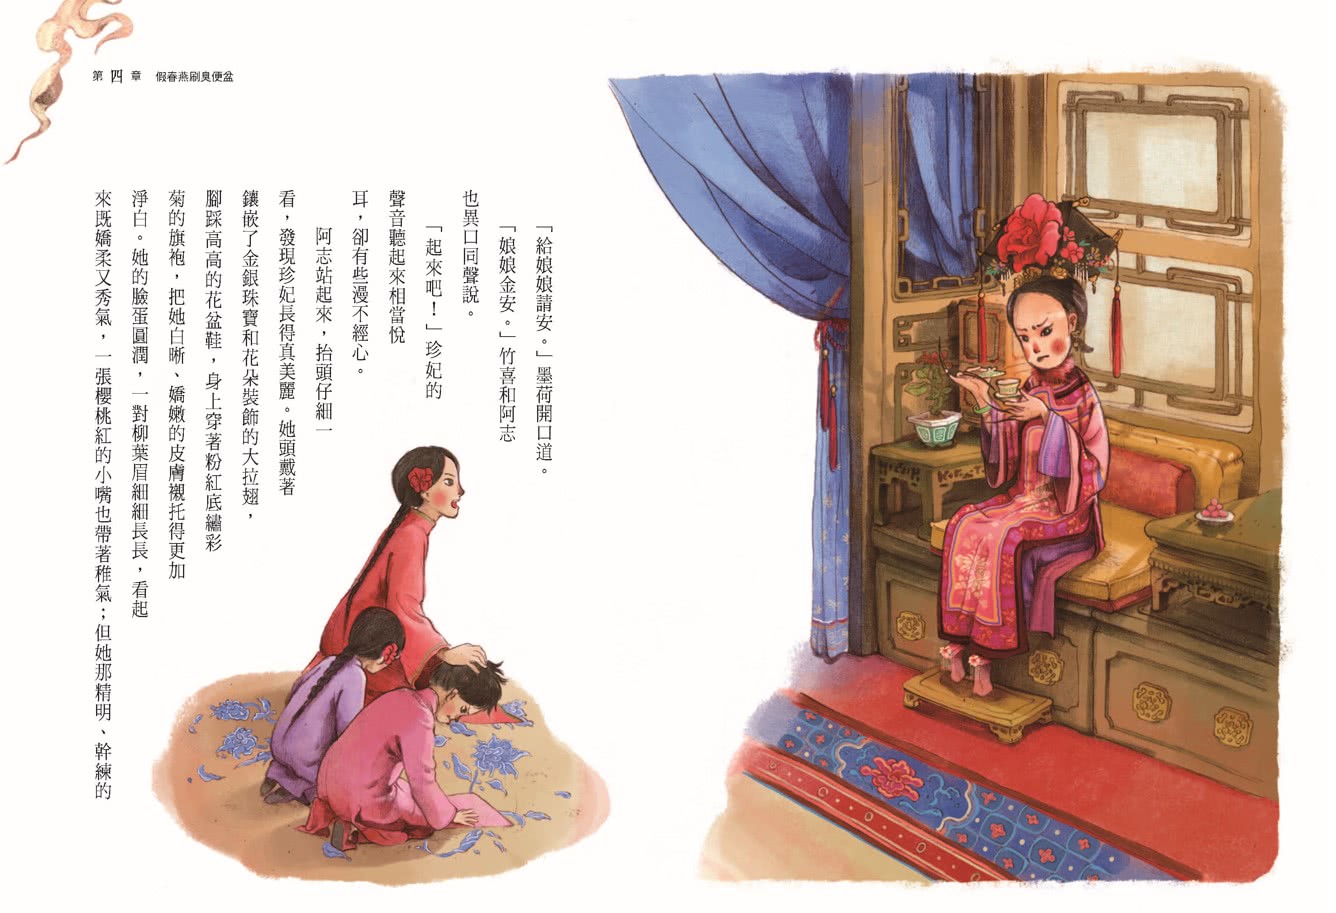 穿越故宮大冒險1（暢銷紀念版，附限量遊戲書衣）：翠玉白菜上的蒙古女孩